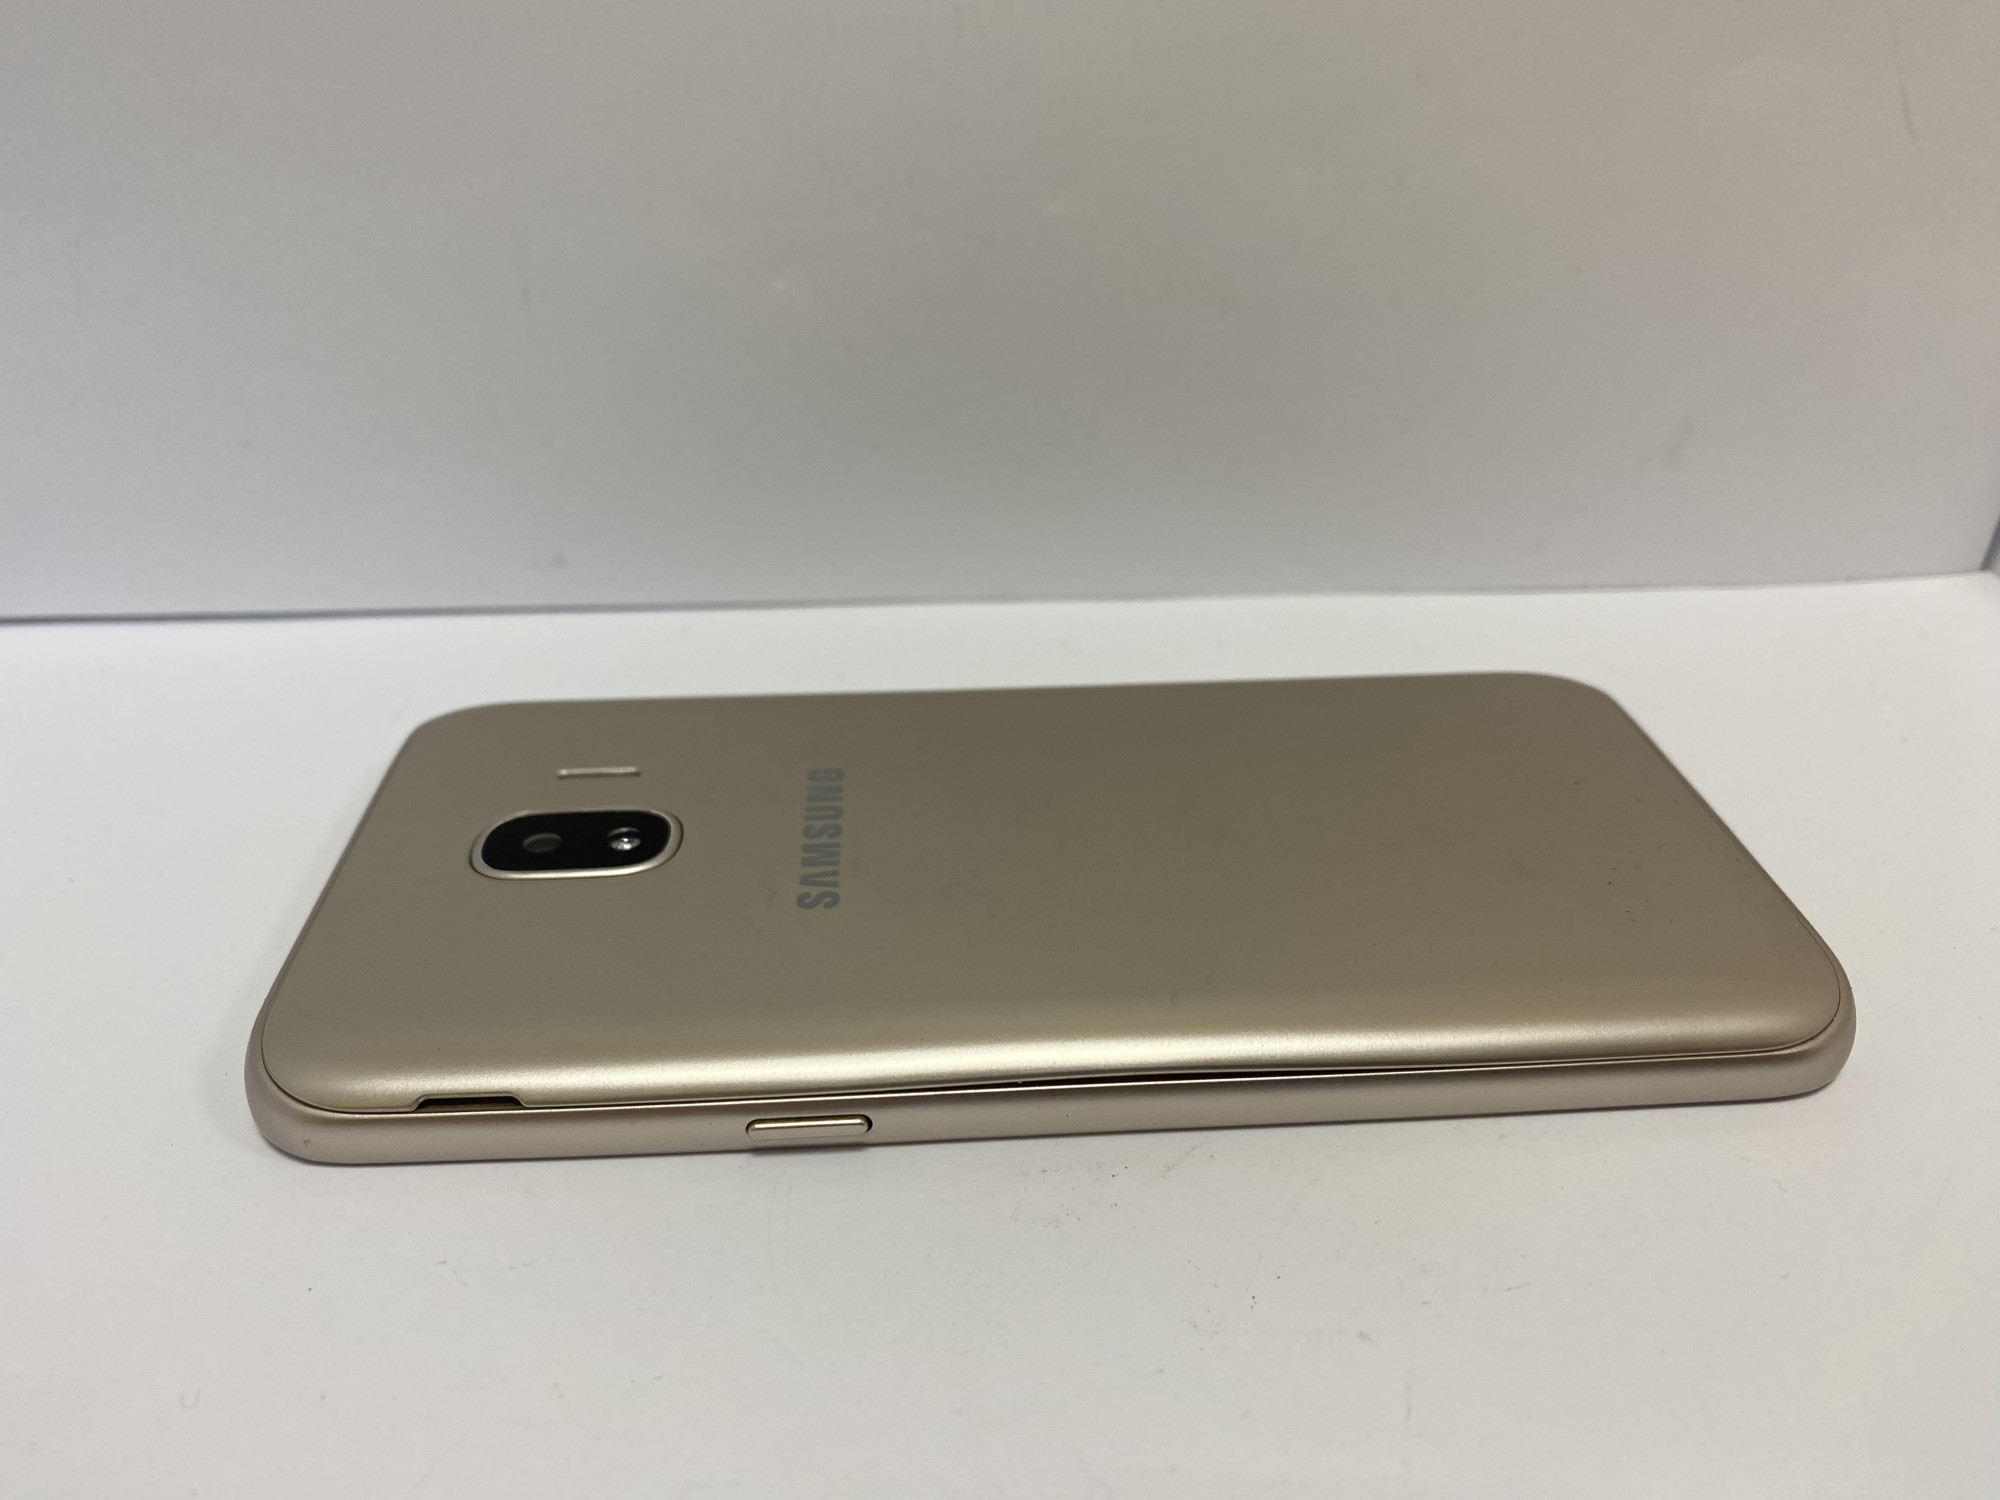 Samsung Galaxy J2 2018 (SM-J250F) 1/16Gb 2